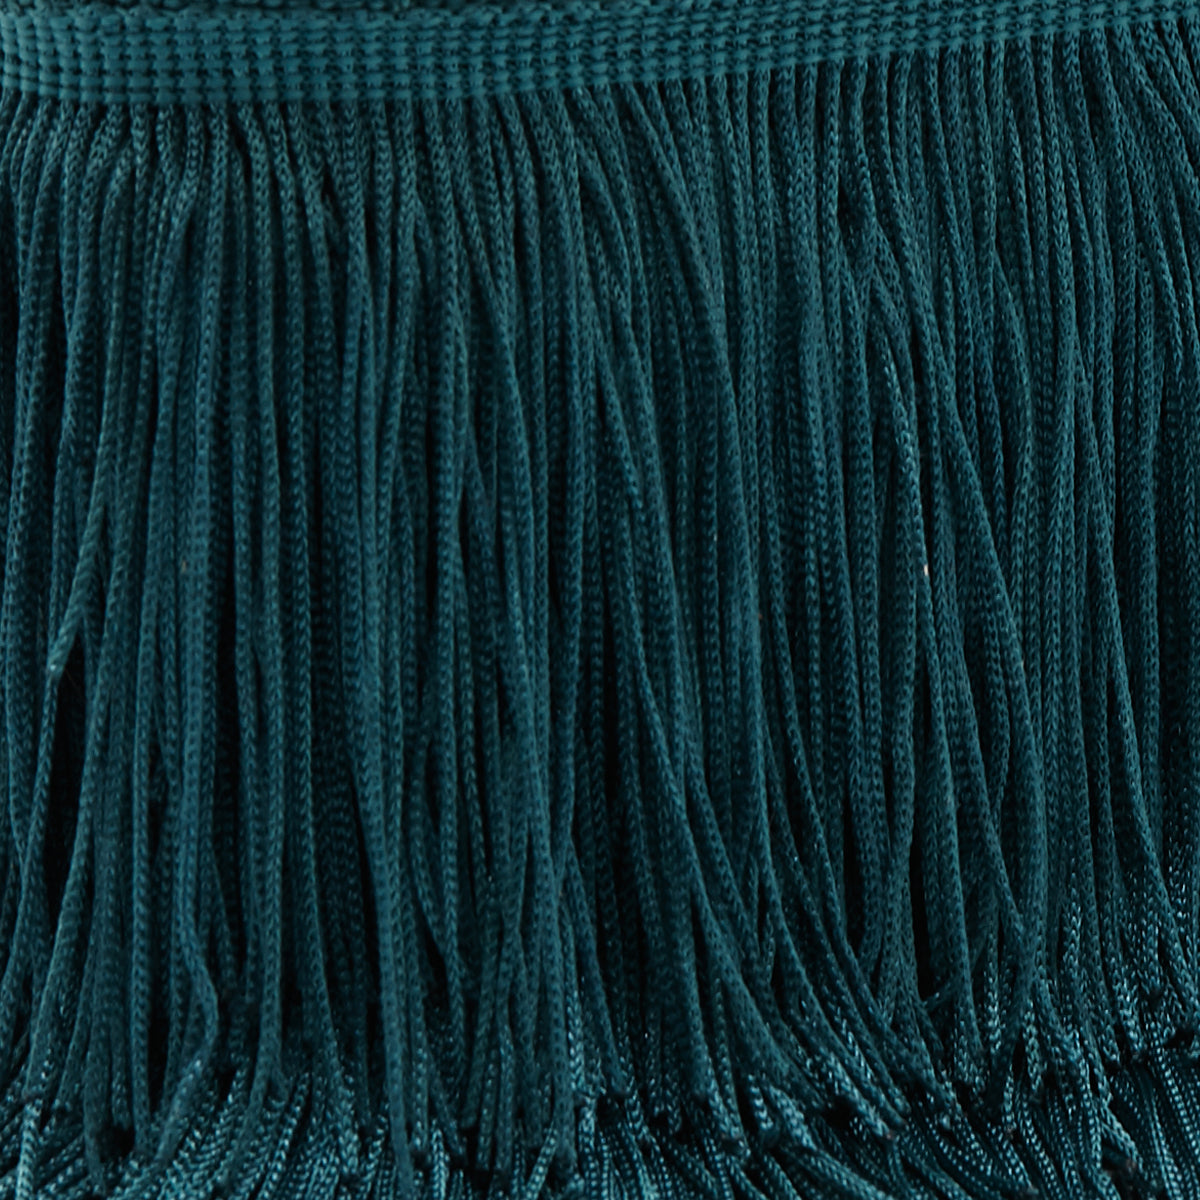 Fringe - Turquoise (detail)